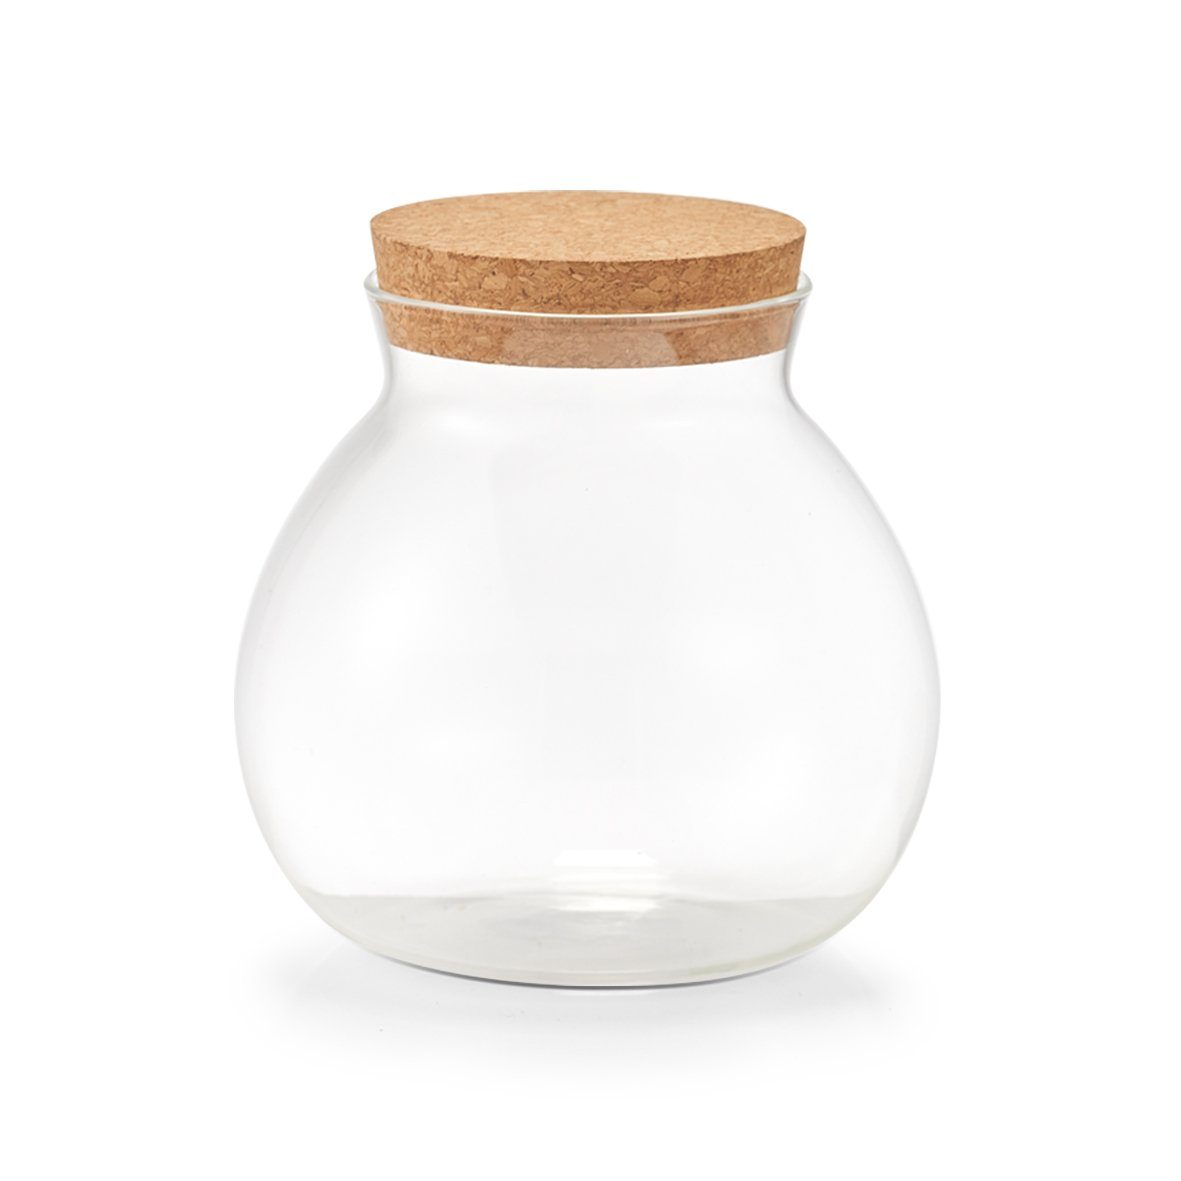 Zeller Present Vorratsglas Vorratsglas m. Korkdeckel, Glas/Kork, 1050 ml, Glas/Kork, transparent, Ø13,1 x 13,1 cm